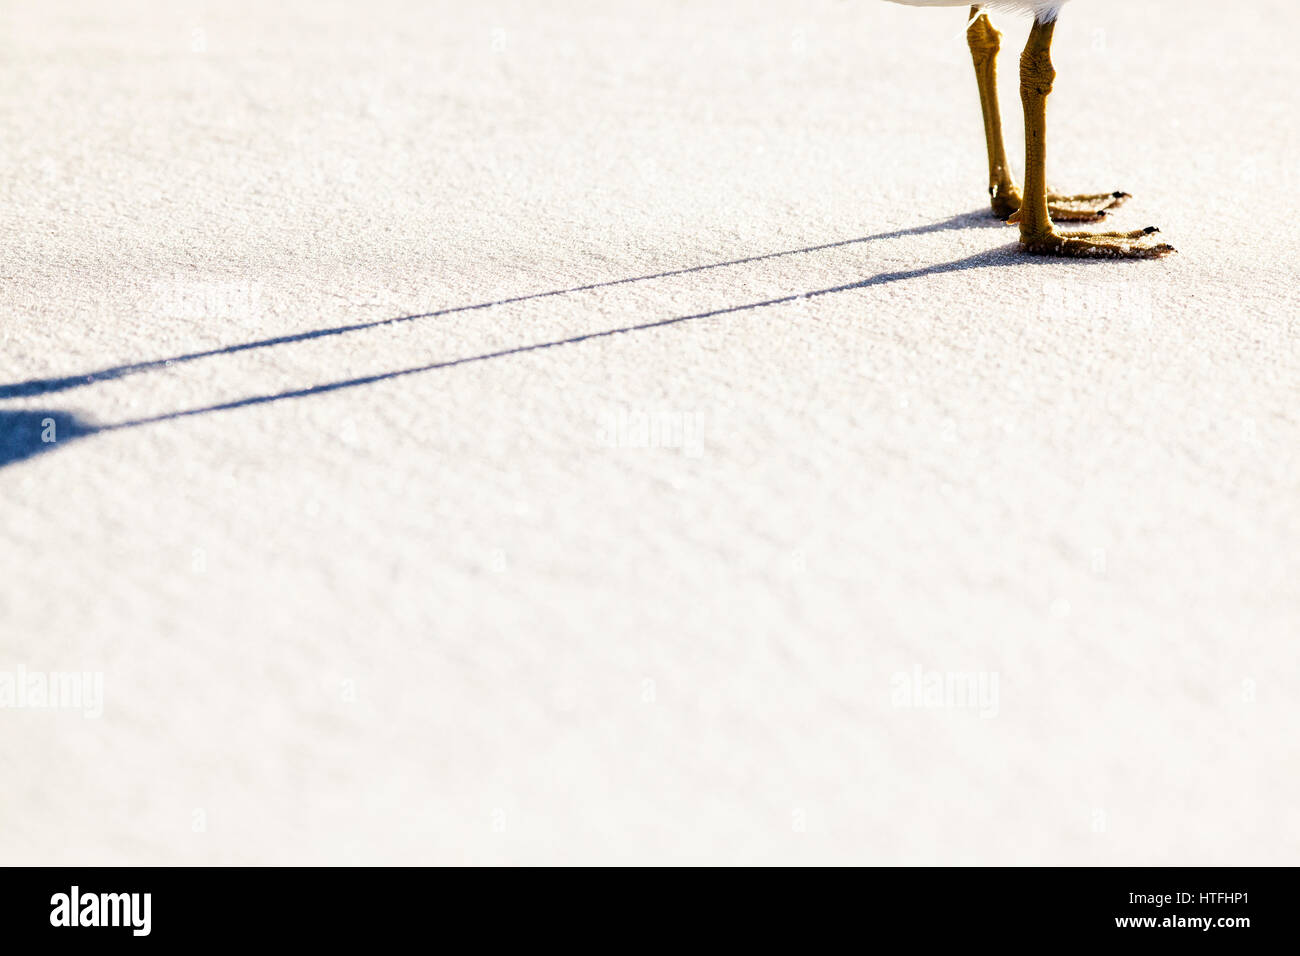 Seagull gambe e lunga ombra su una superficie liscia di sabbia bianca. Foto Stock